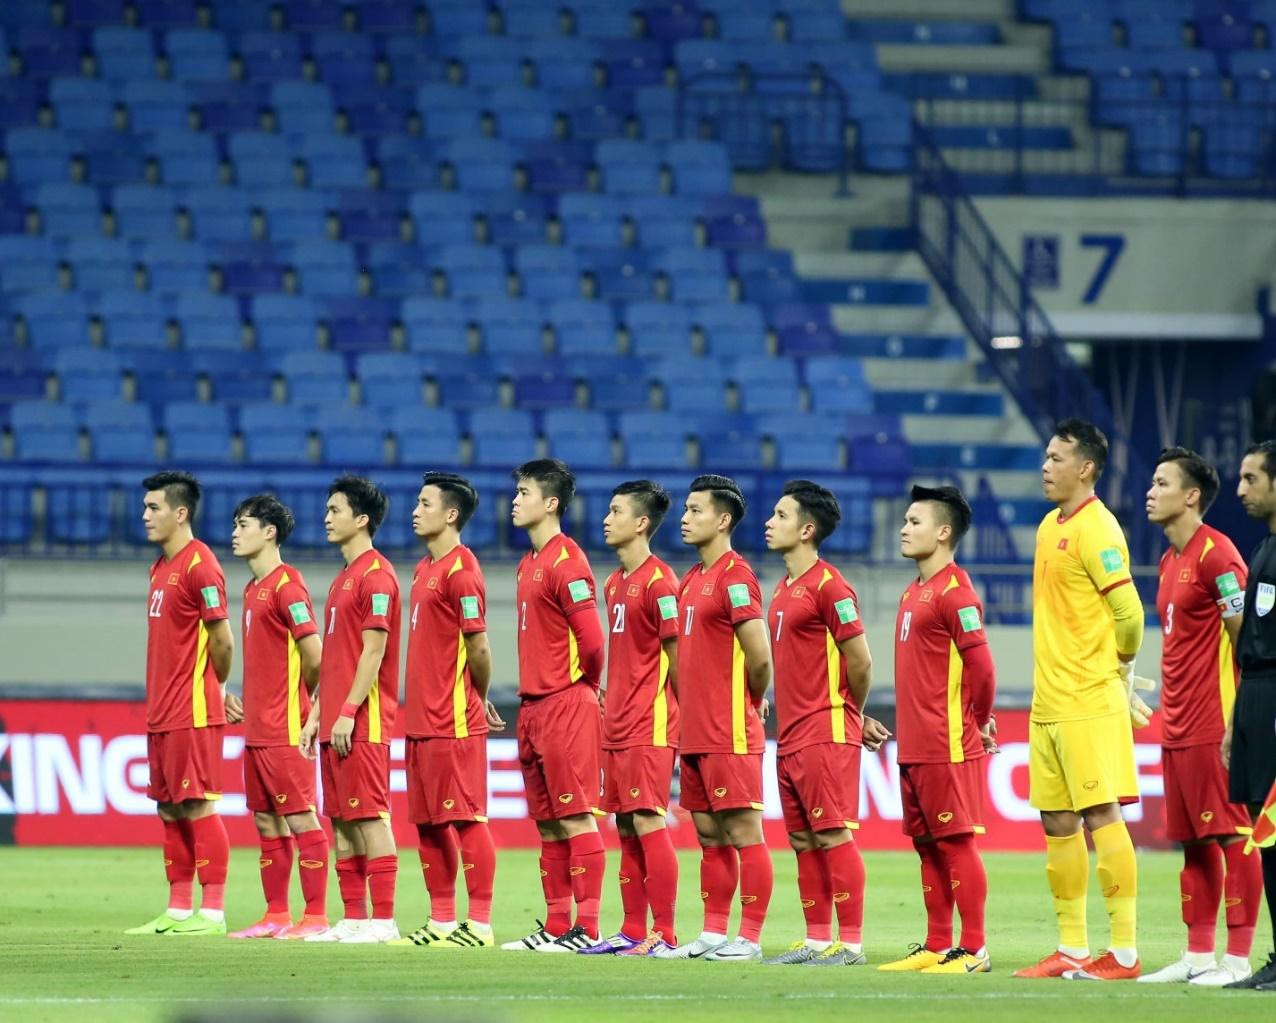 Sát cánh cùng đội tuyển Bóng đá Việt Nam chinh phục đỉnh cao mới - Ảnh 3.